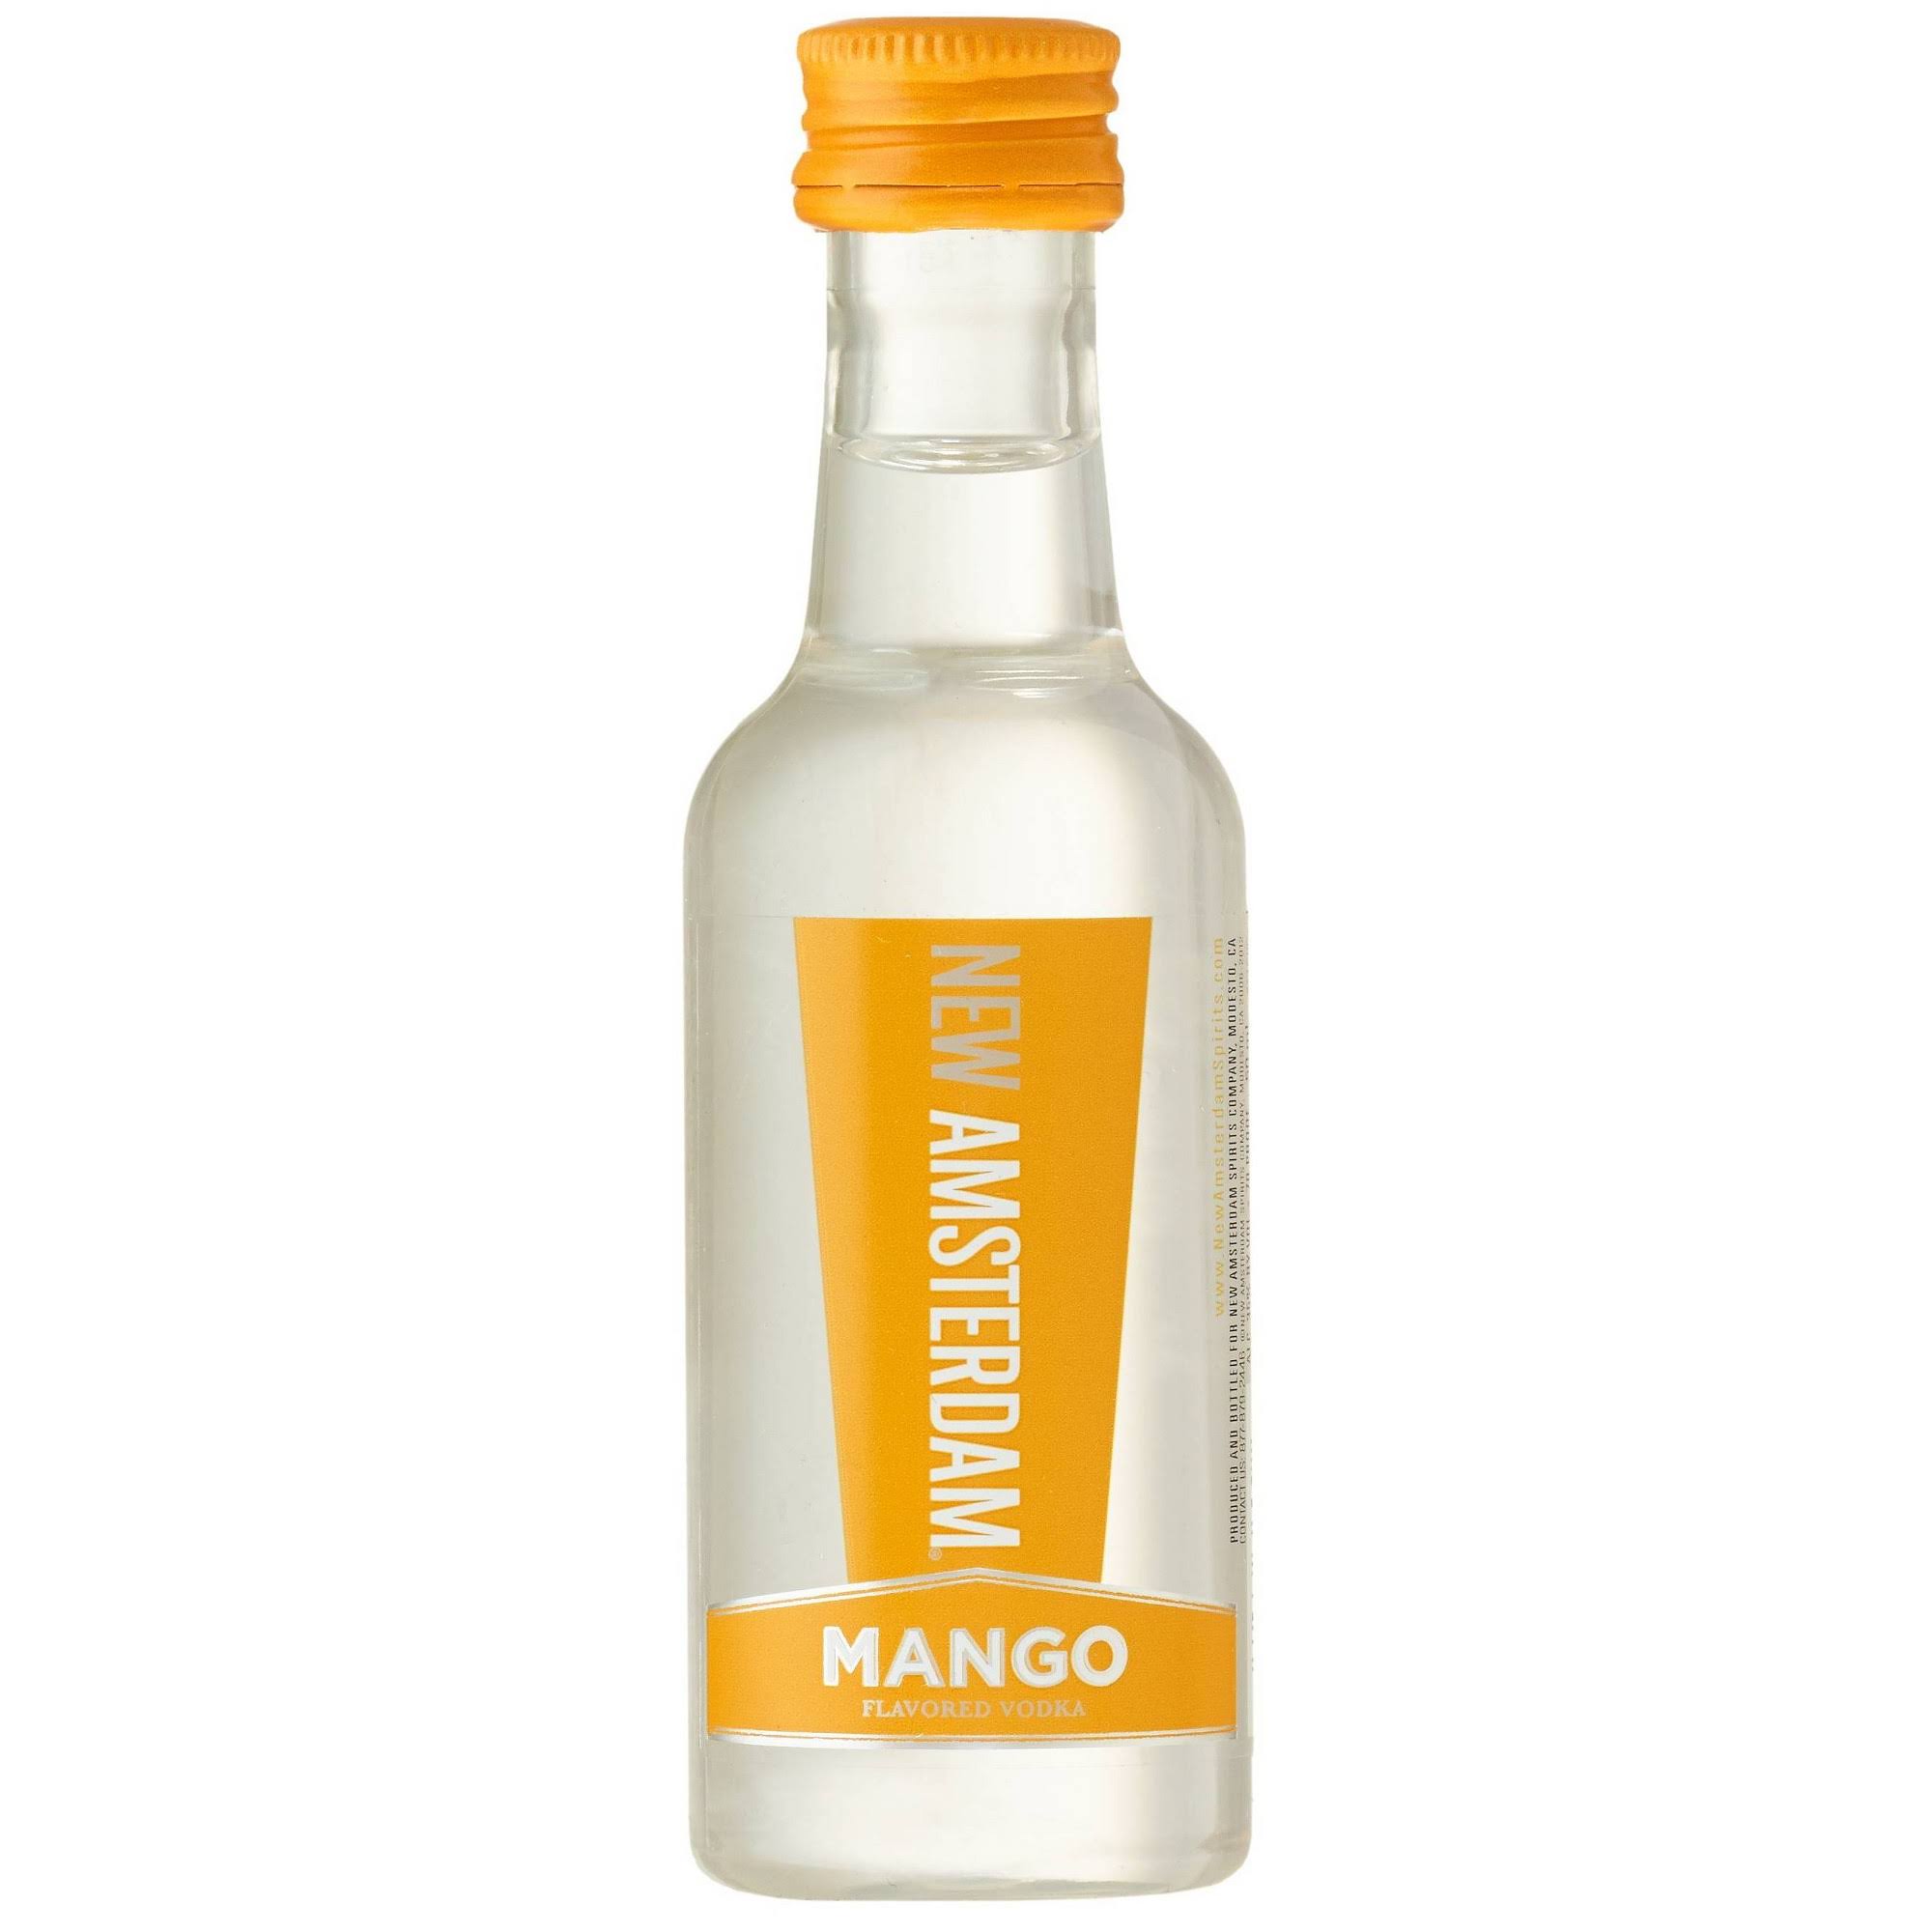 New Amsterdam Mango Flavored Vodka - 50 ml